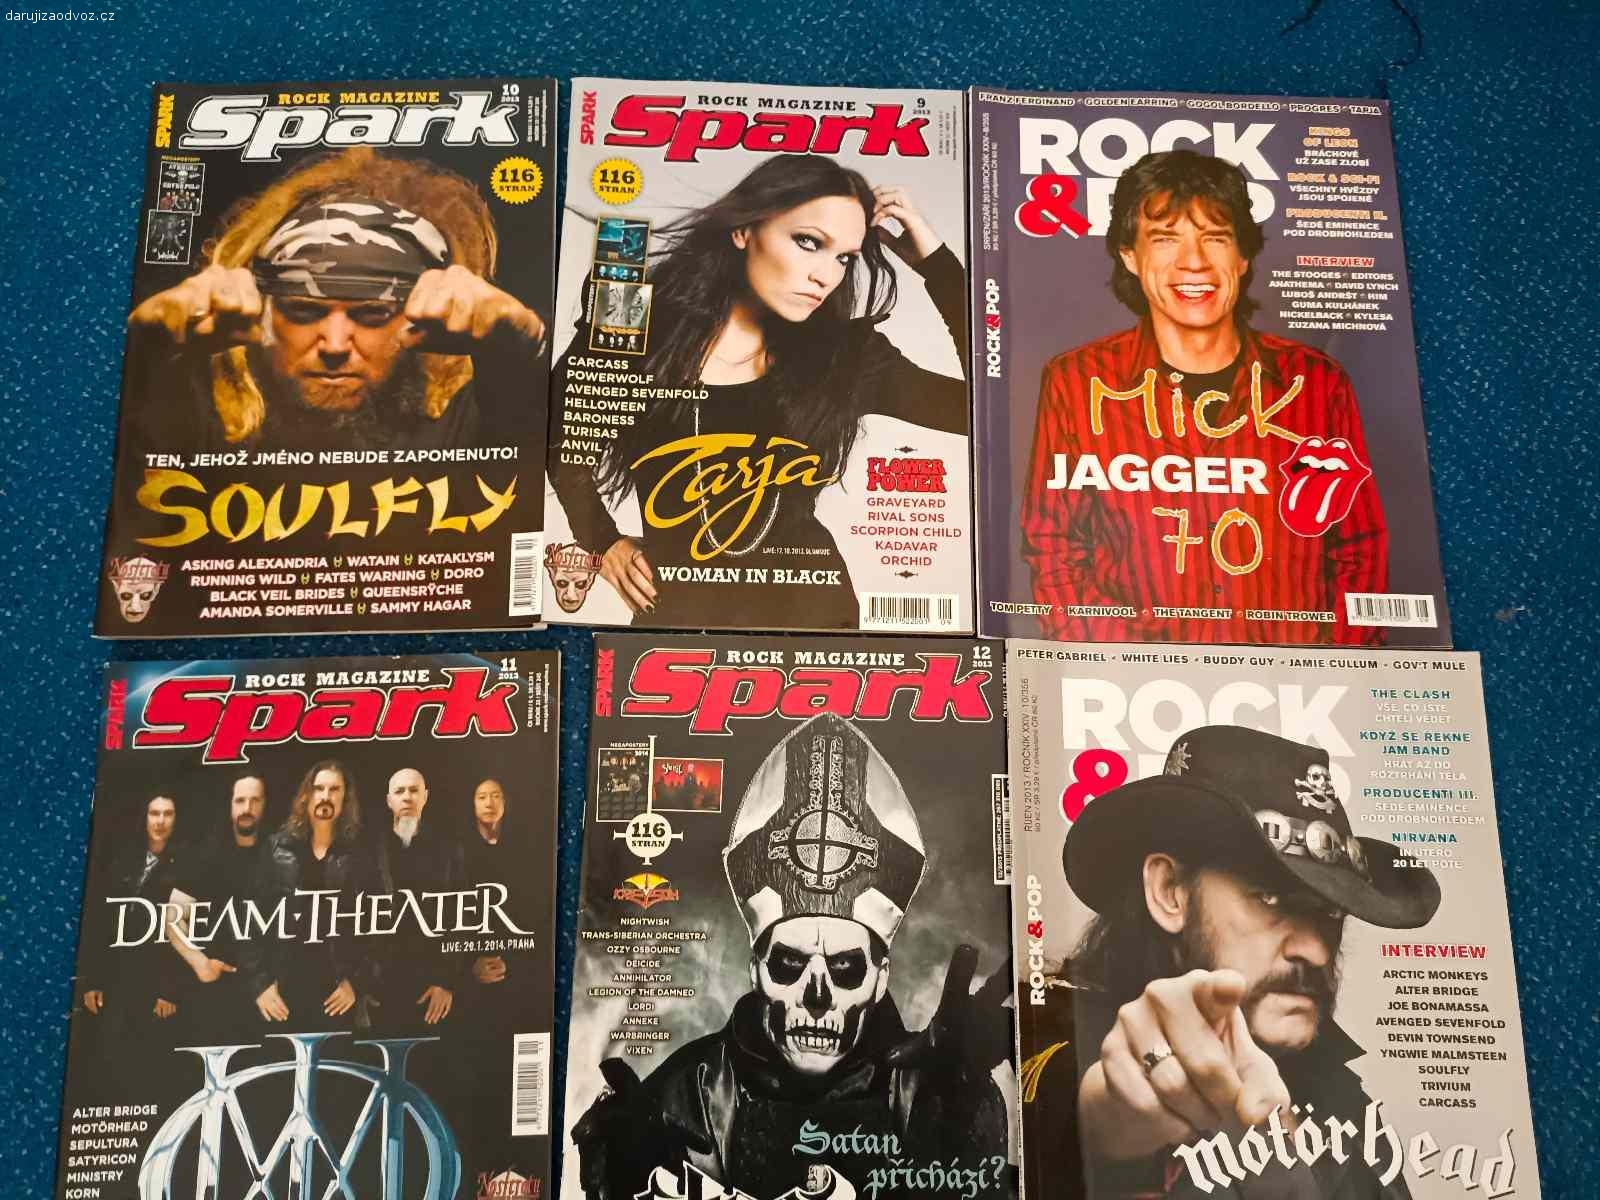 Časopisy  Playboy, Spark, Rock&R. Daruji za odvoz starší časopisy viz foto.
Pouze osobní odběr na Praze 1